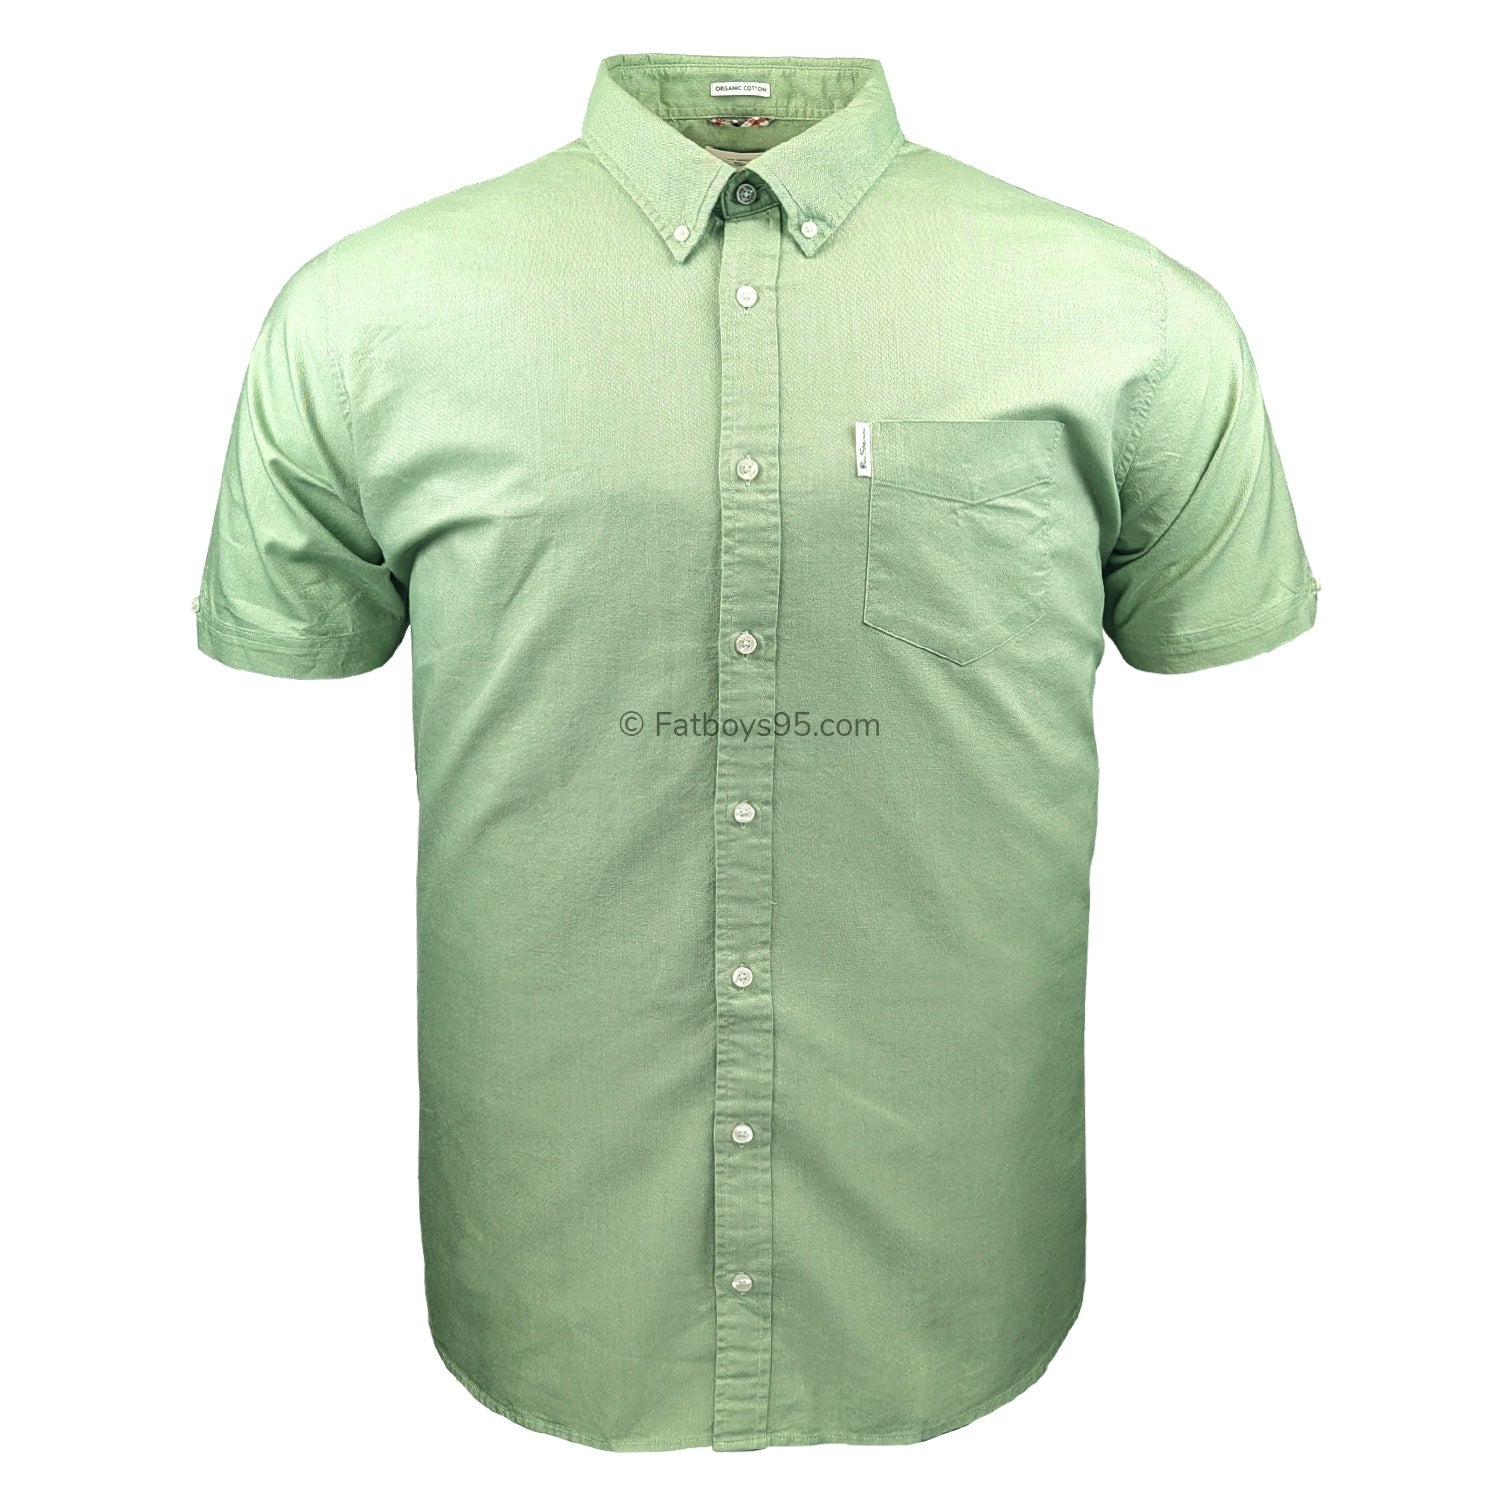 Ben Sherman S/S Oxford Shirt - 0065095IL - Grass Green 1